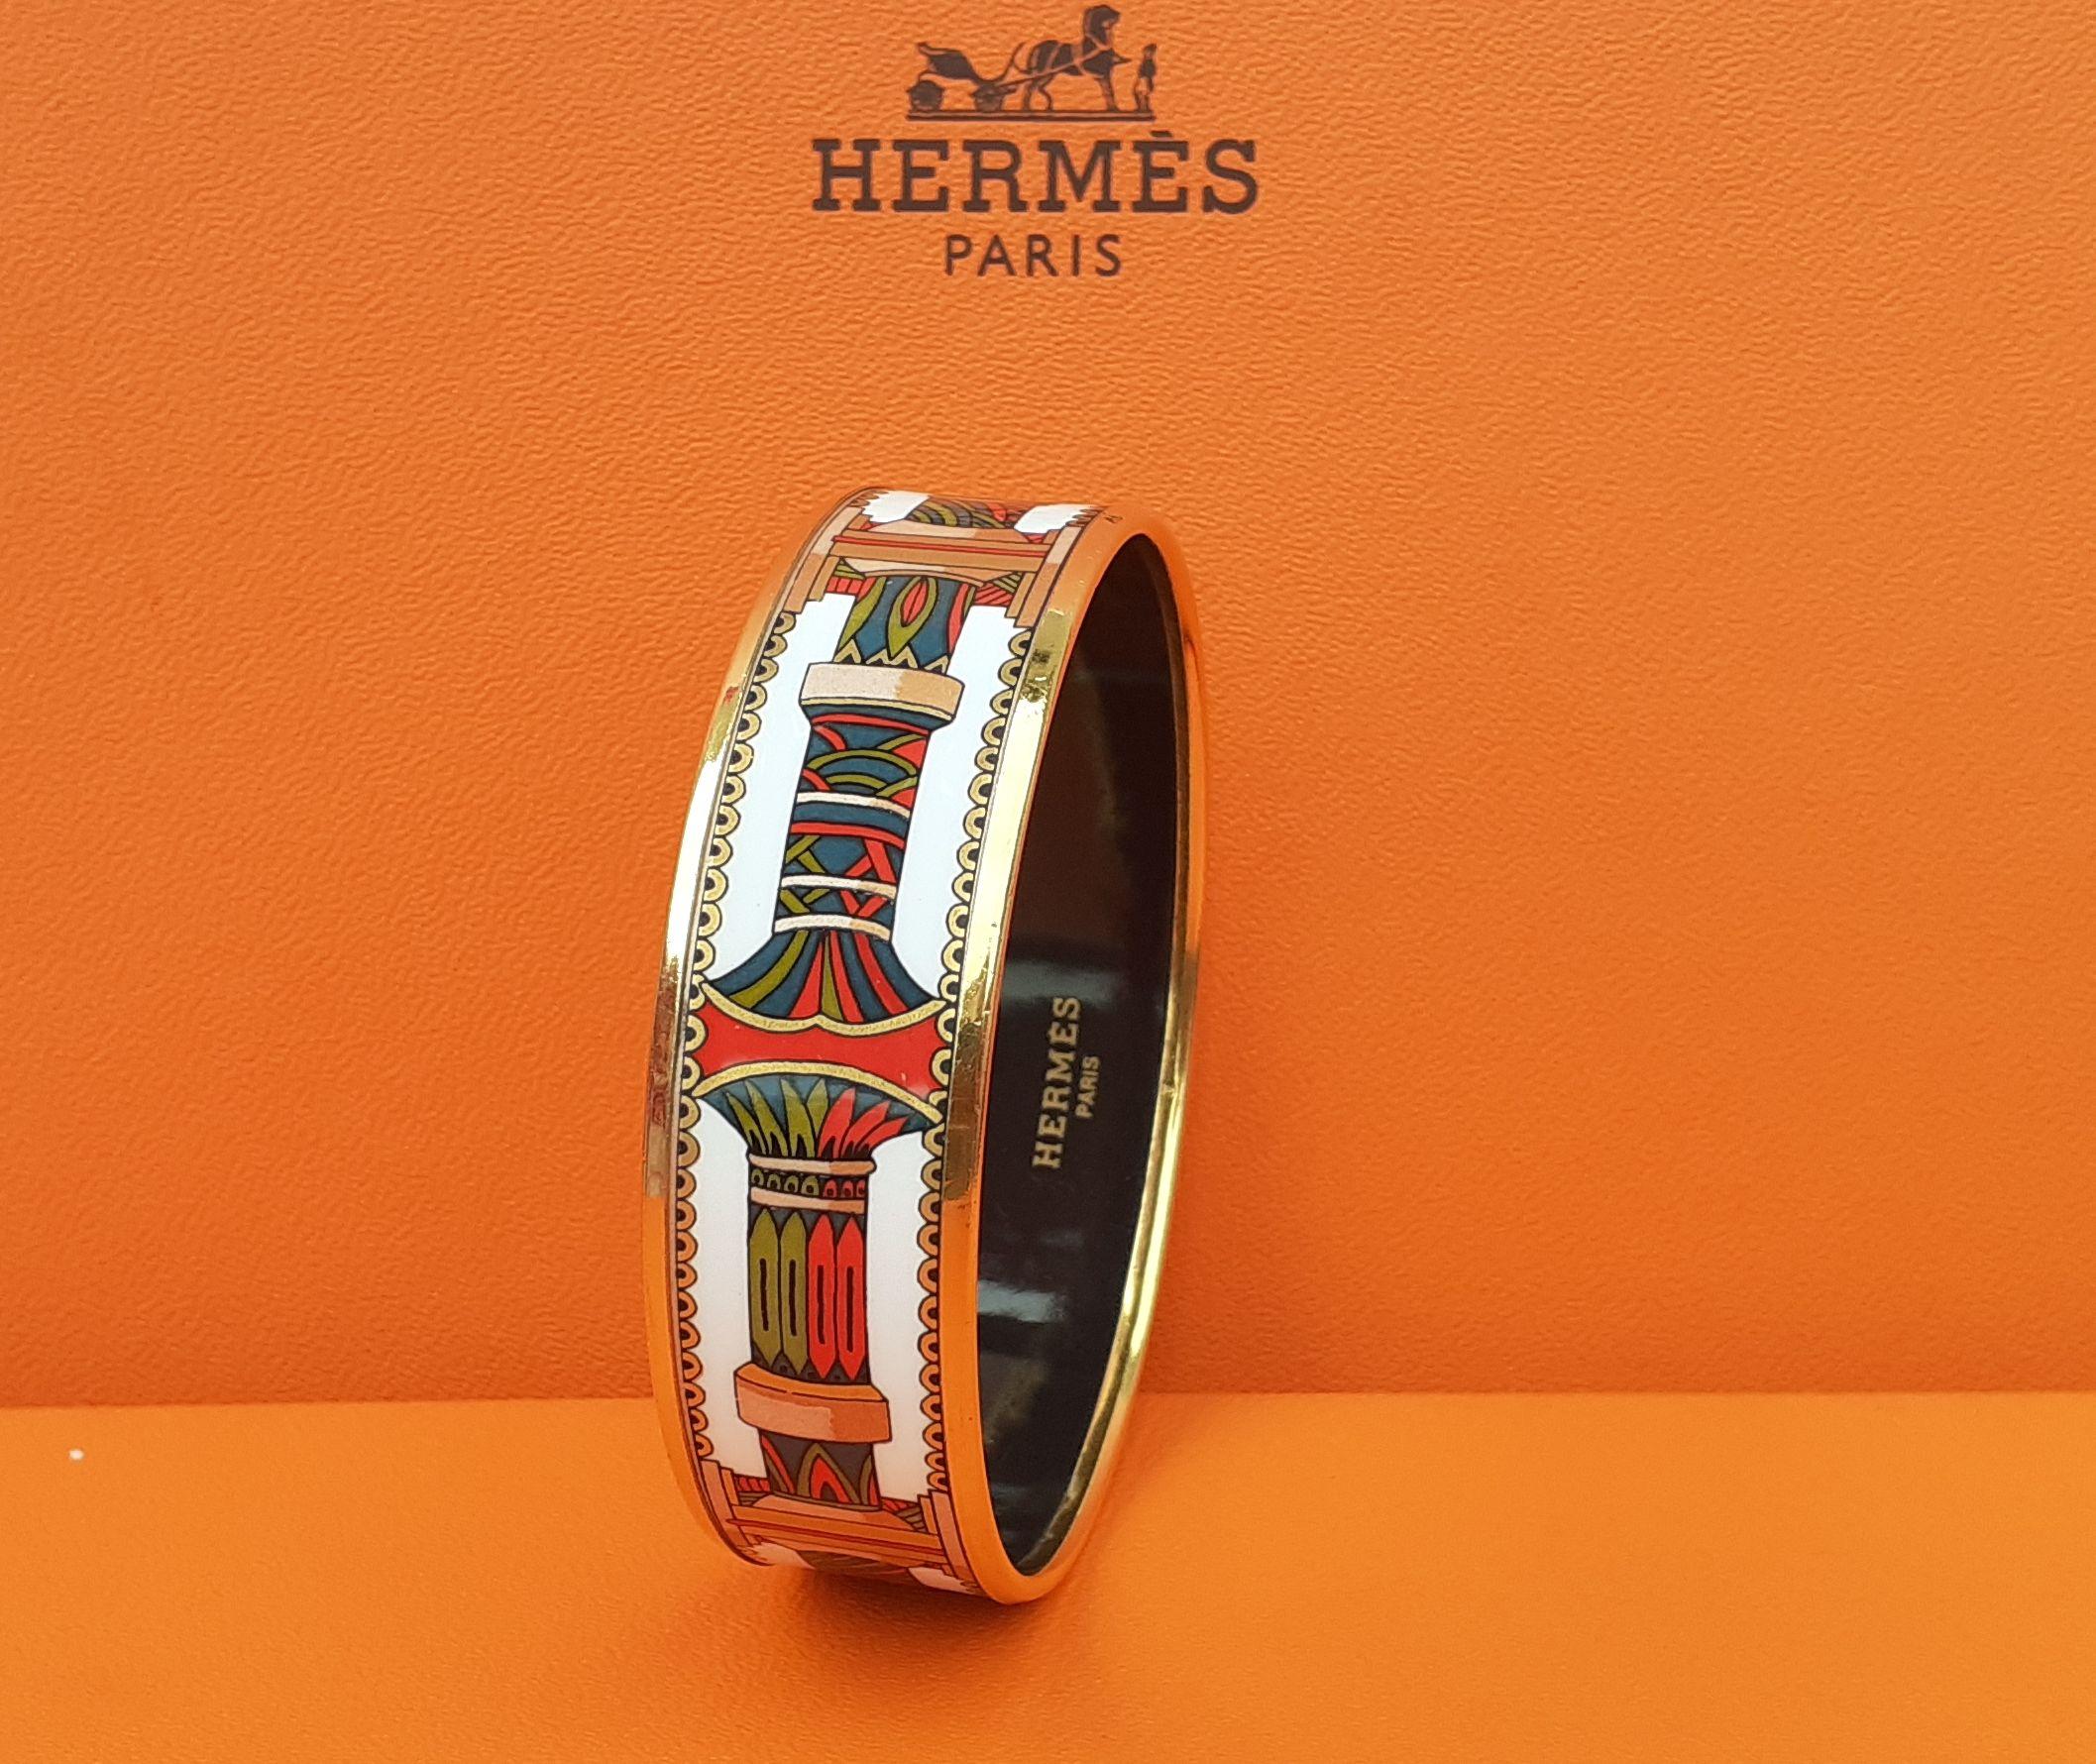 Schönes authentisches Hermès Armband

Geometrische Muster

Made in Austria X (1994)

Hergestellt aus Emaille gedruckt und gelb vergoldet Hardware

Farbvarianten: Weiß, Rot, Grün, Gold

